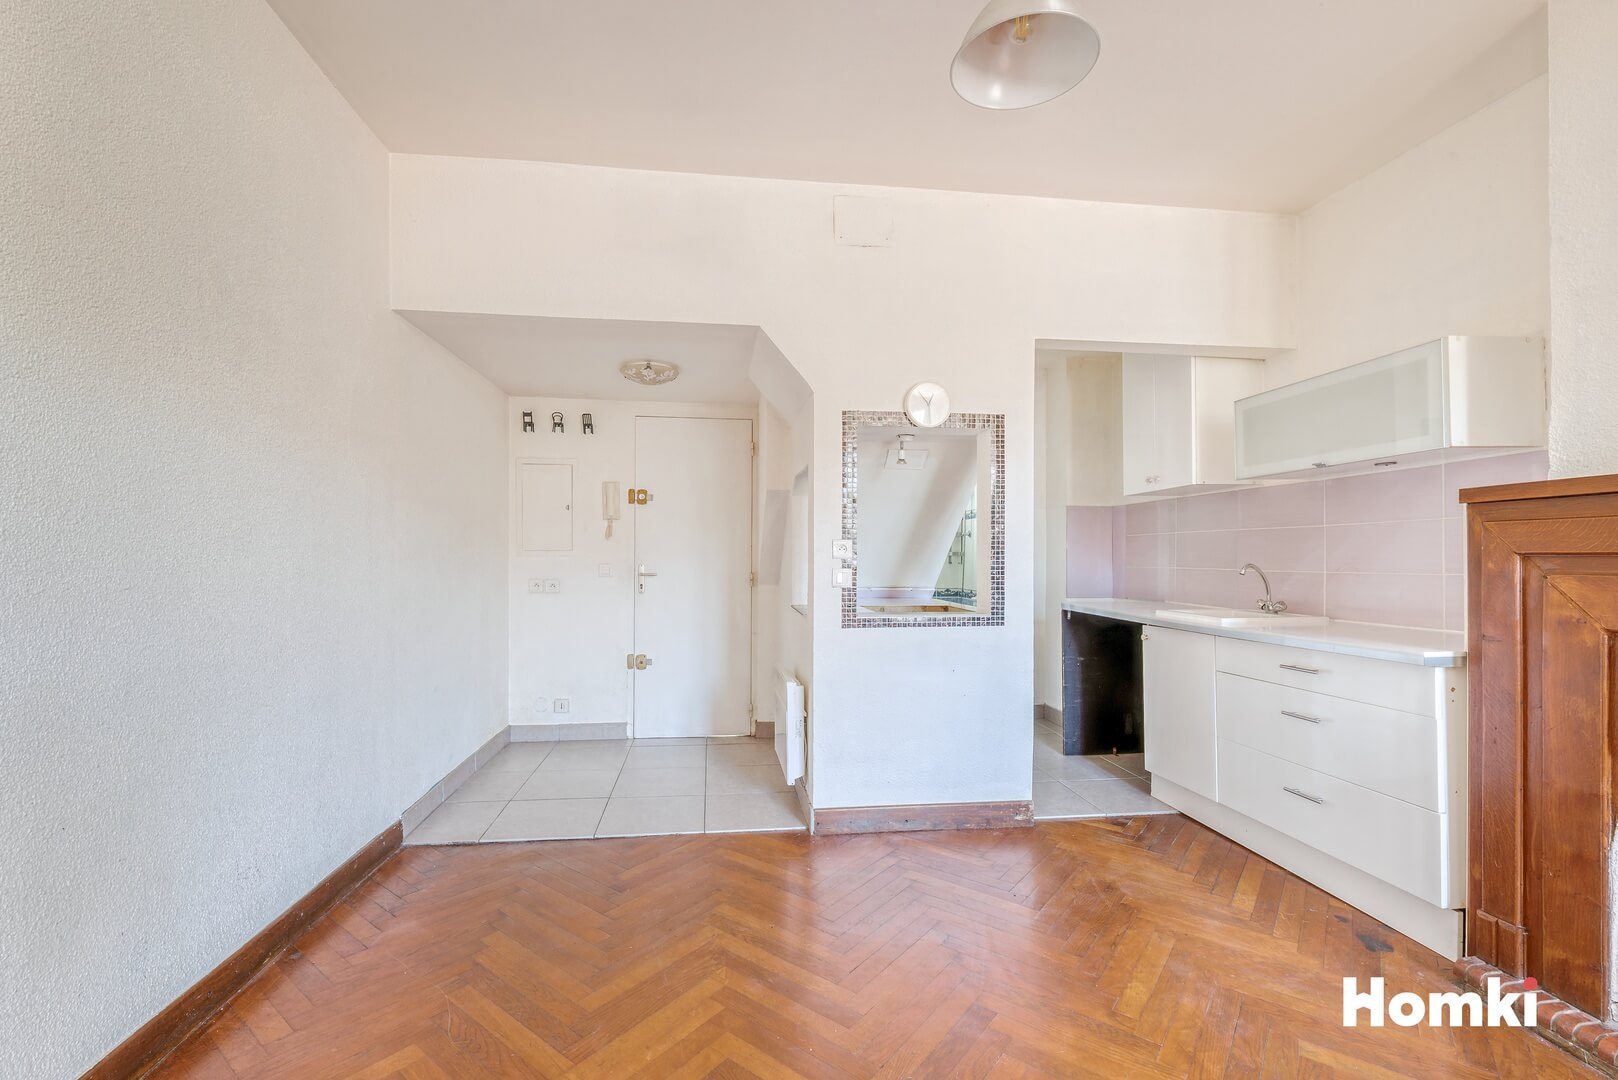 Homki - Vente Appartement  de 43.0 m² à Castelnau-le-Lez 34170